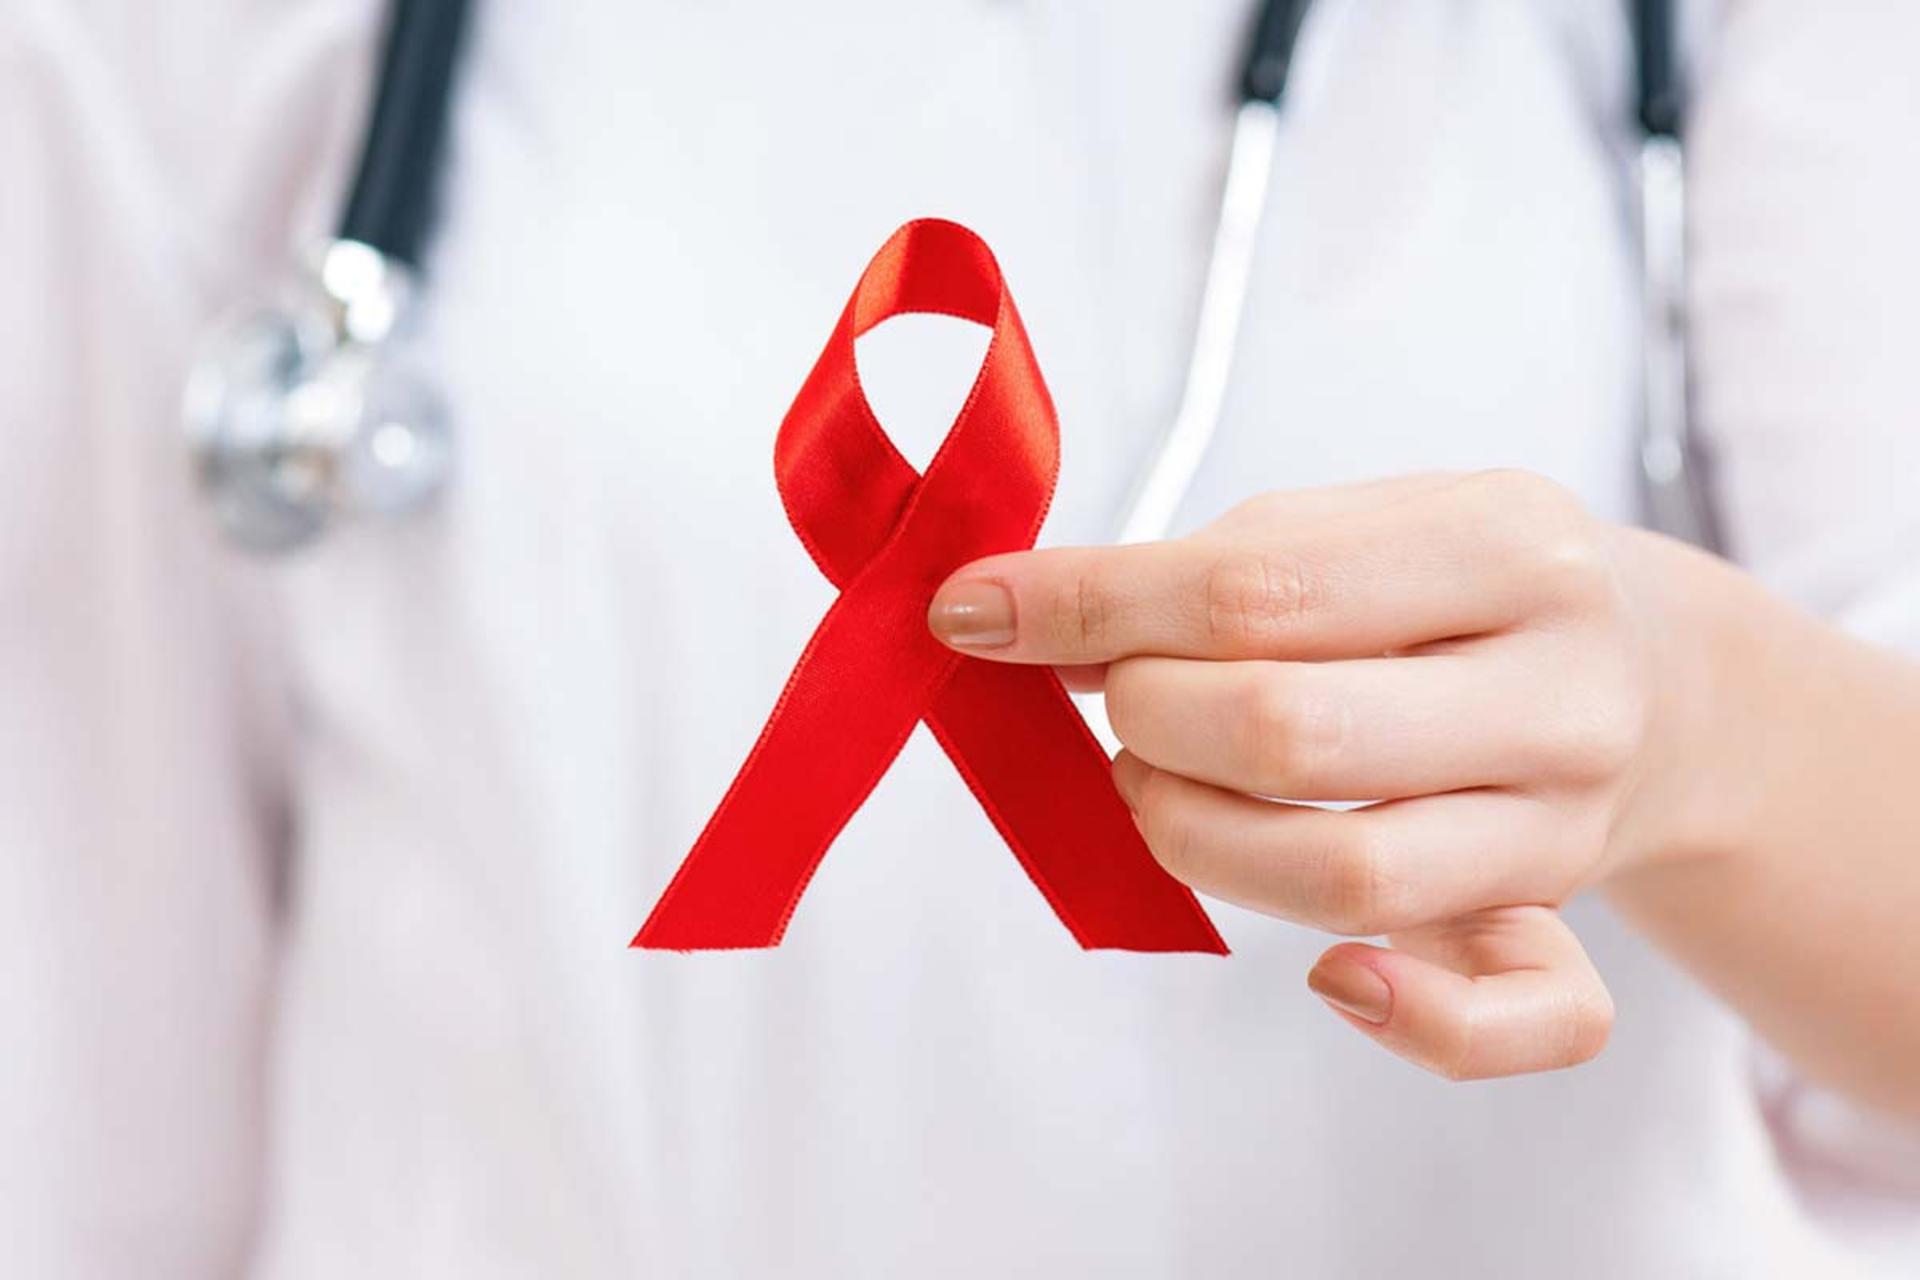 روبان قرمز در دستان پزشک به عنوان نماد روز جهانی ایدز